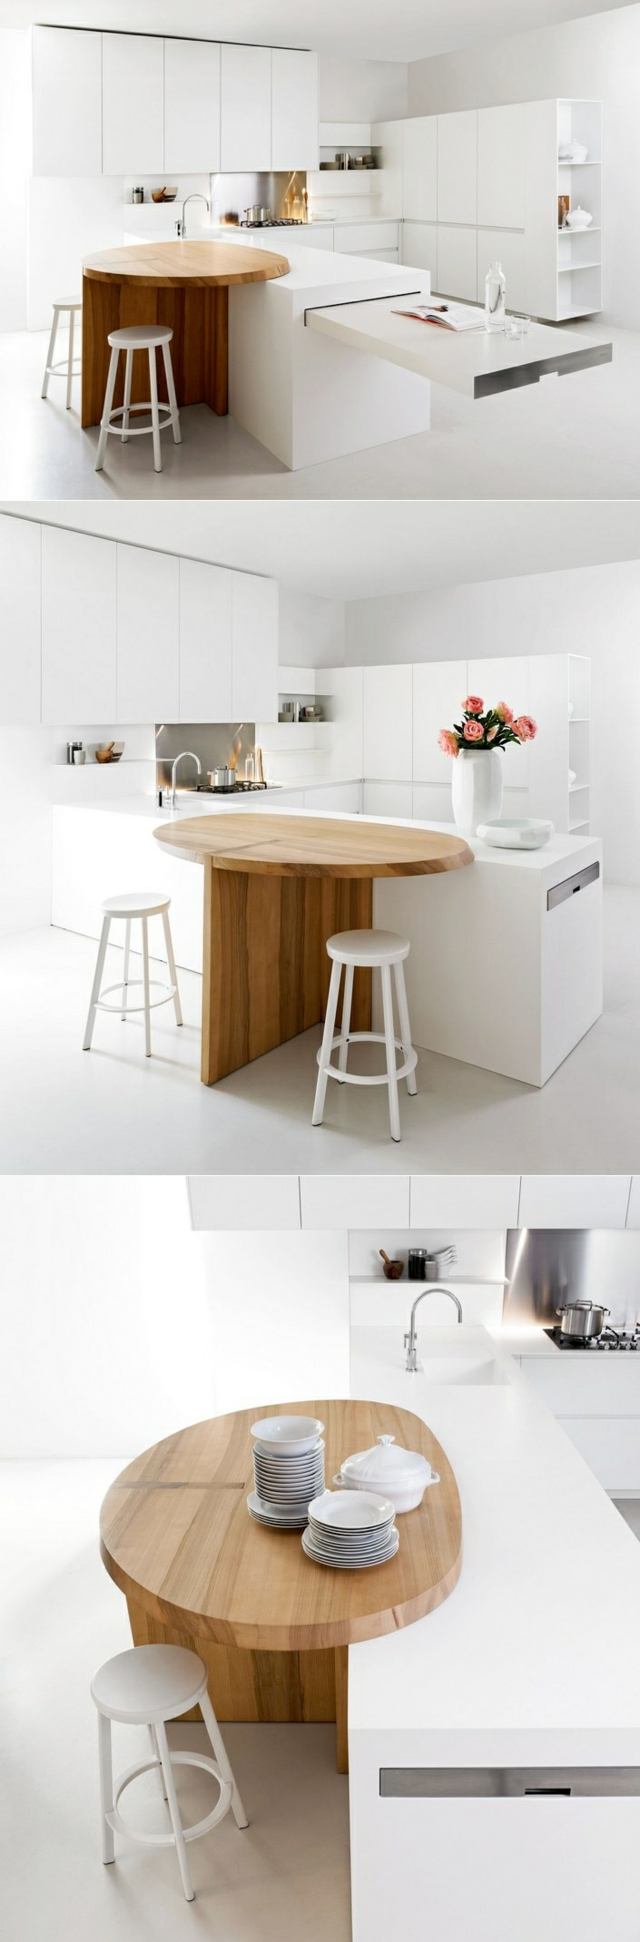 Küche rundes Kochinsel Theke weiße Einbauküche modern minimalistisch